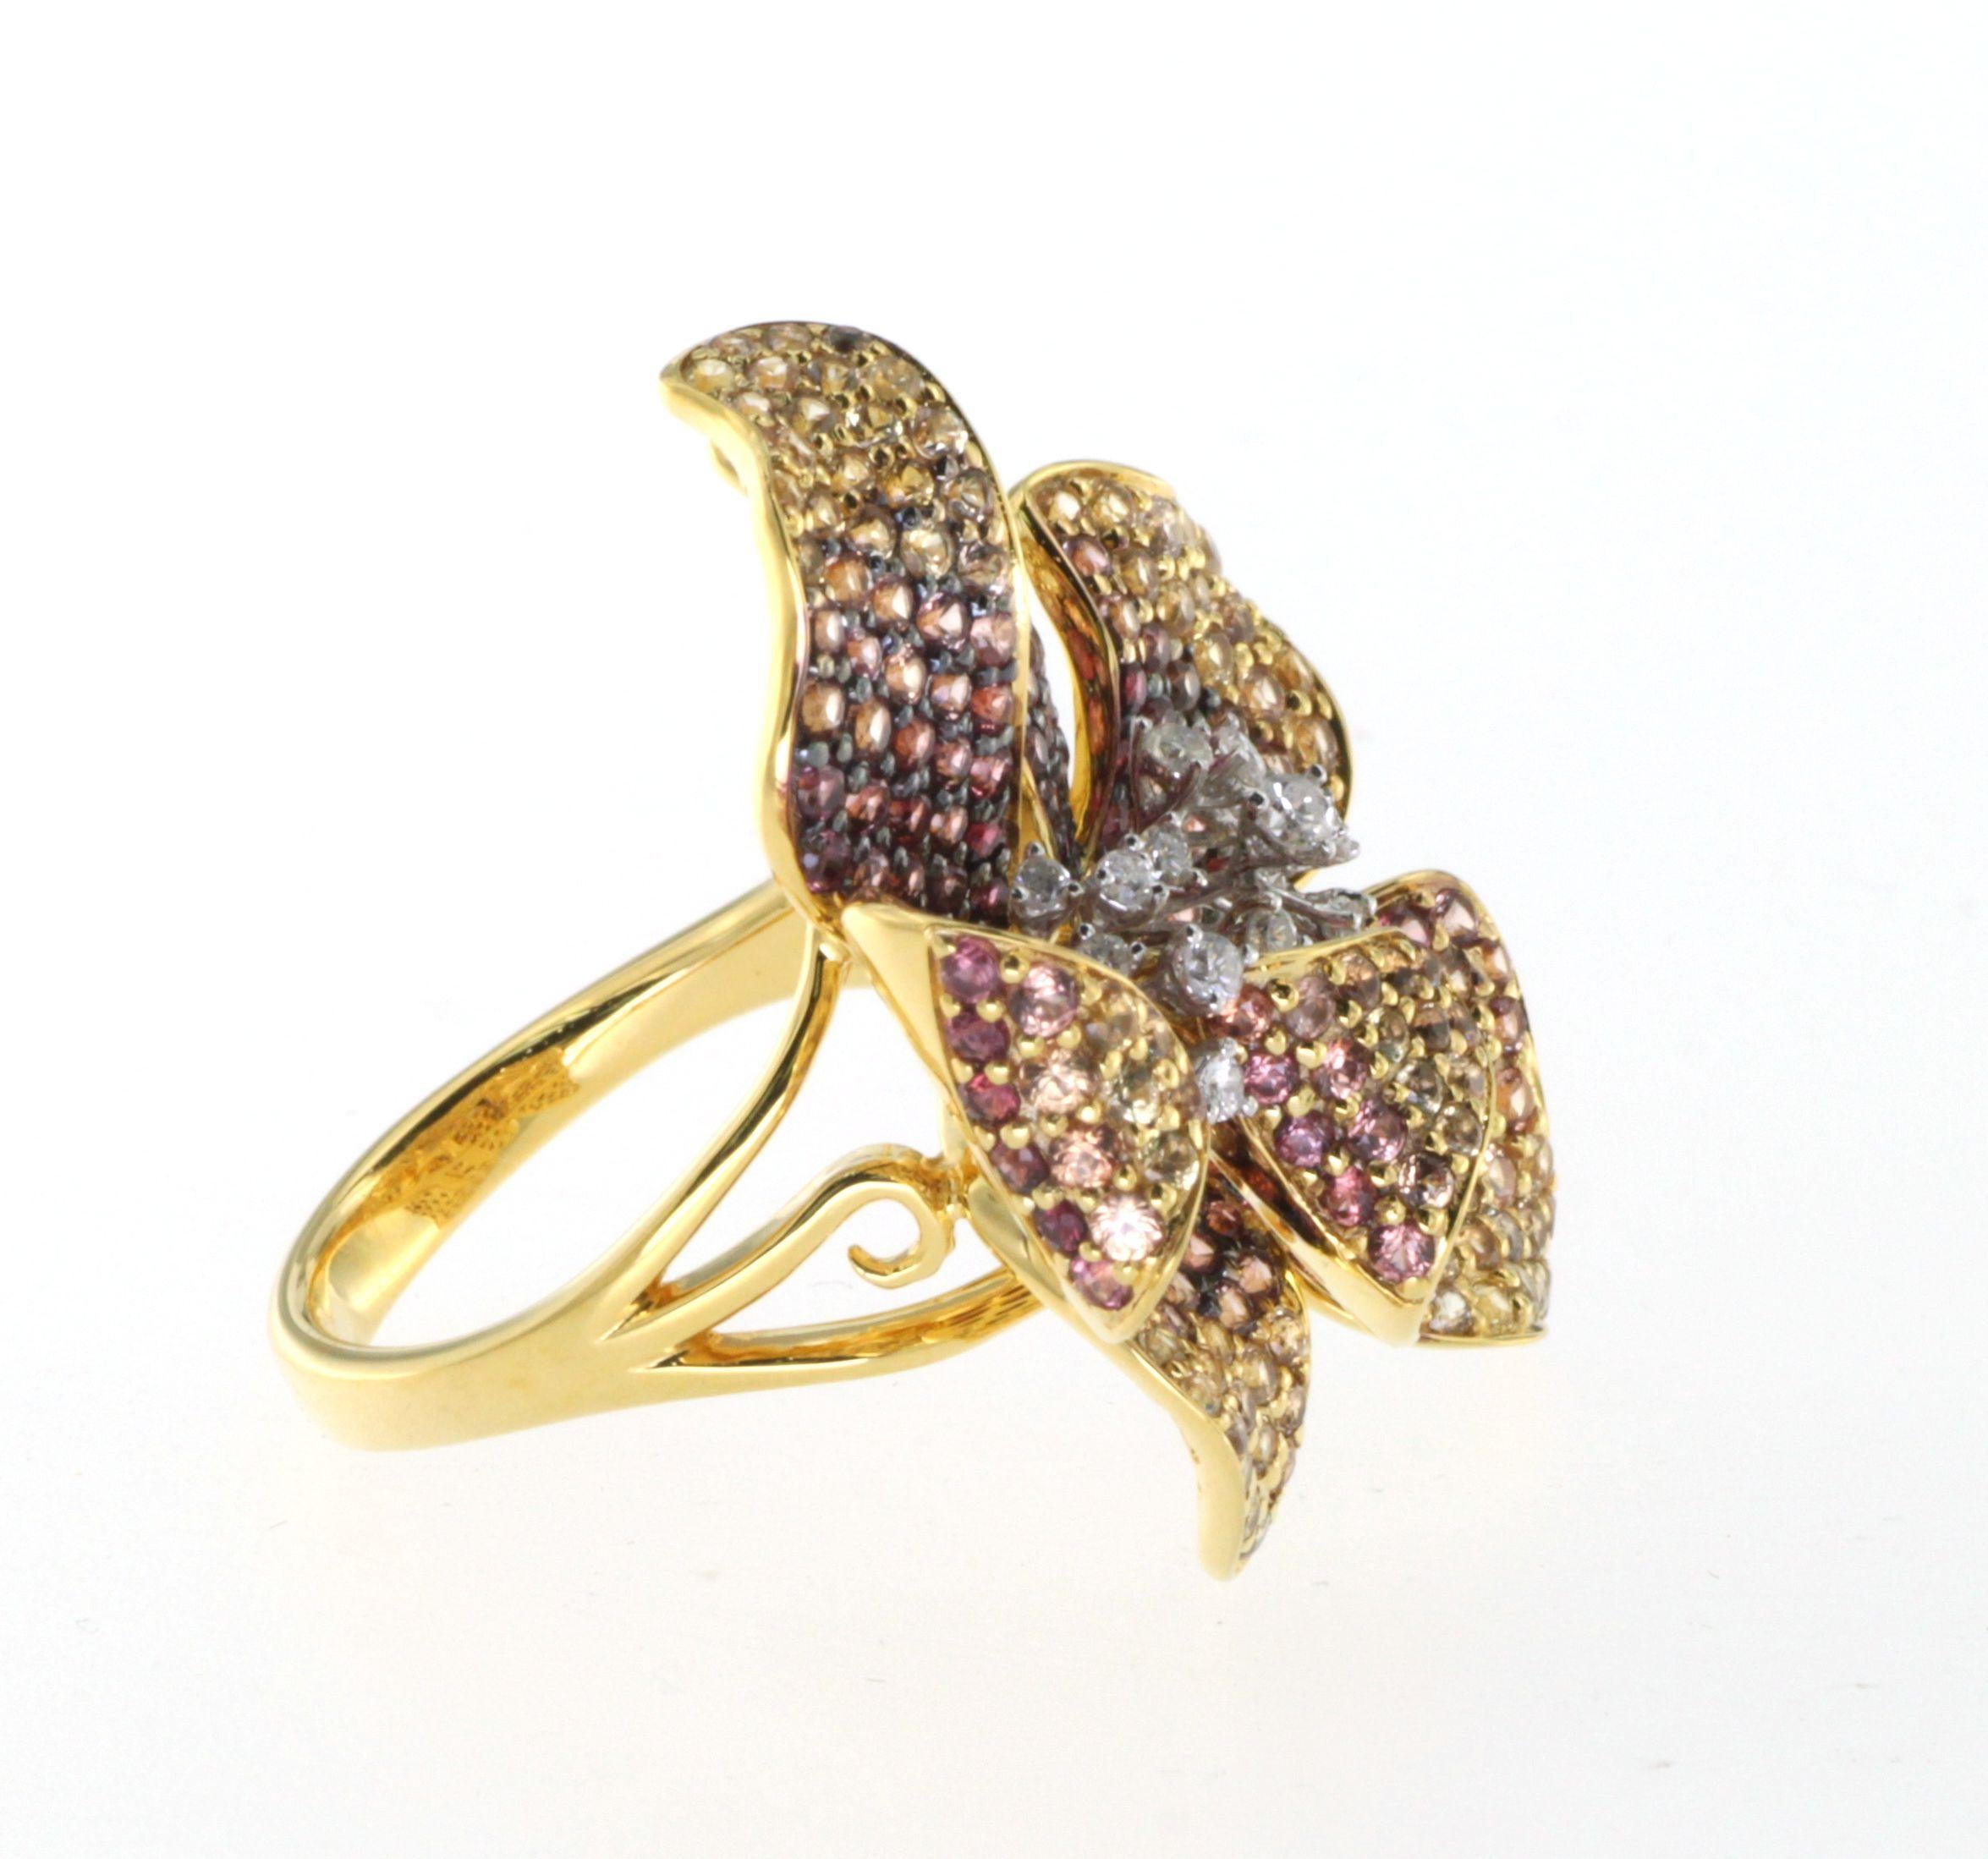 Brilliant Cut Fancy Sapphire Flower Ring in 18K Yellow Gold SR-05267